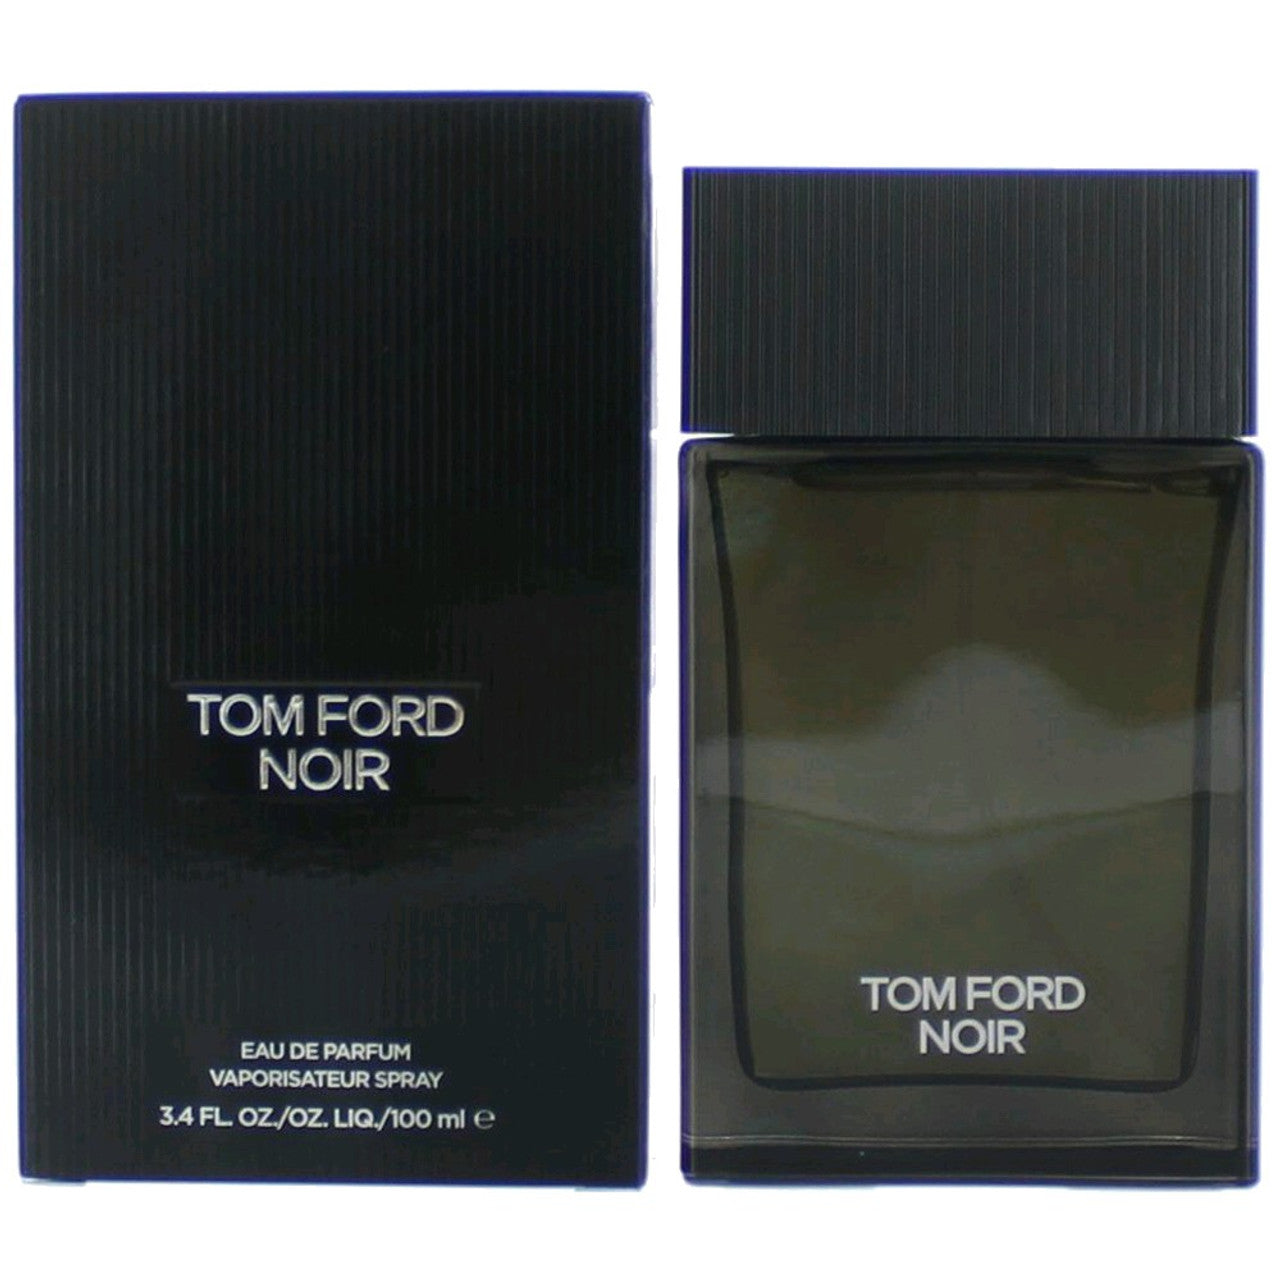 3.4 oz bottle of Tom Ford Noir